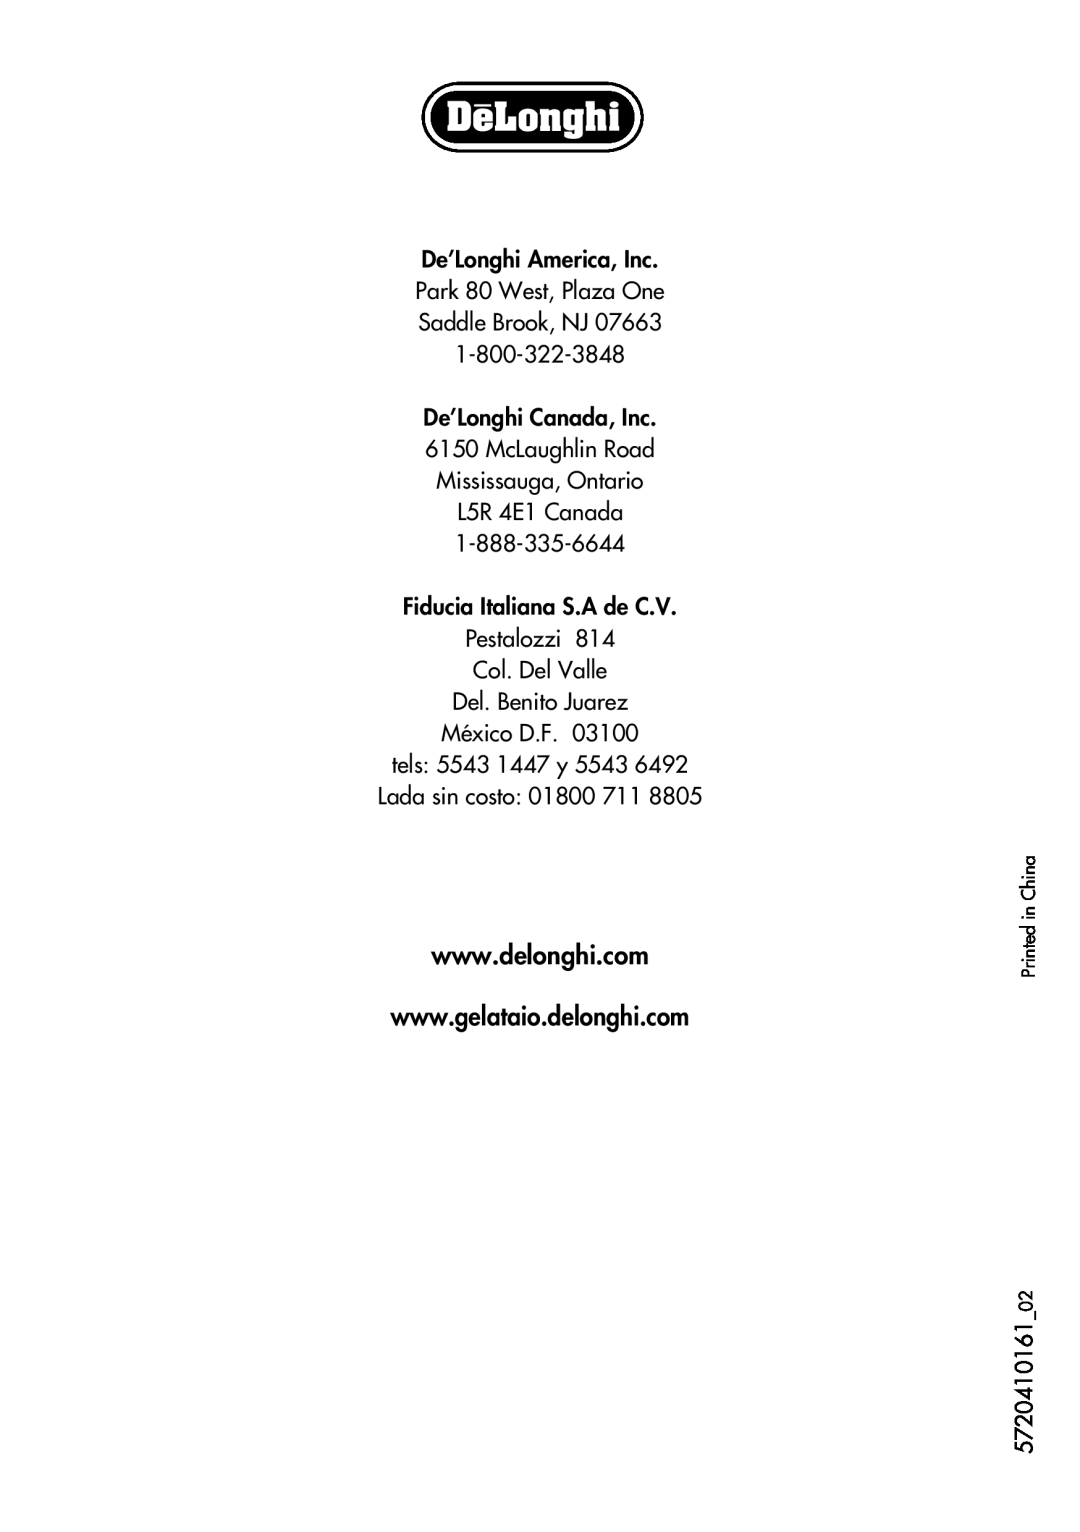 DeLonghi GM6000 manual De’Longhi America, Inc Park 80 West, Plaza One Saddle Brook, NJ, Del. Benito Juarez México D.F 